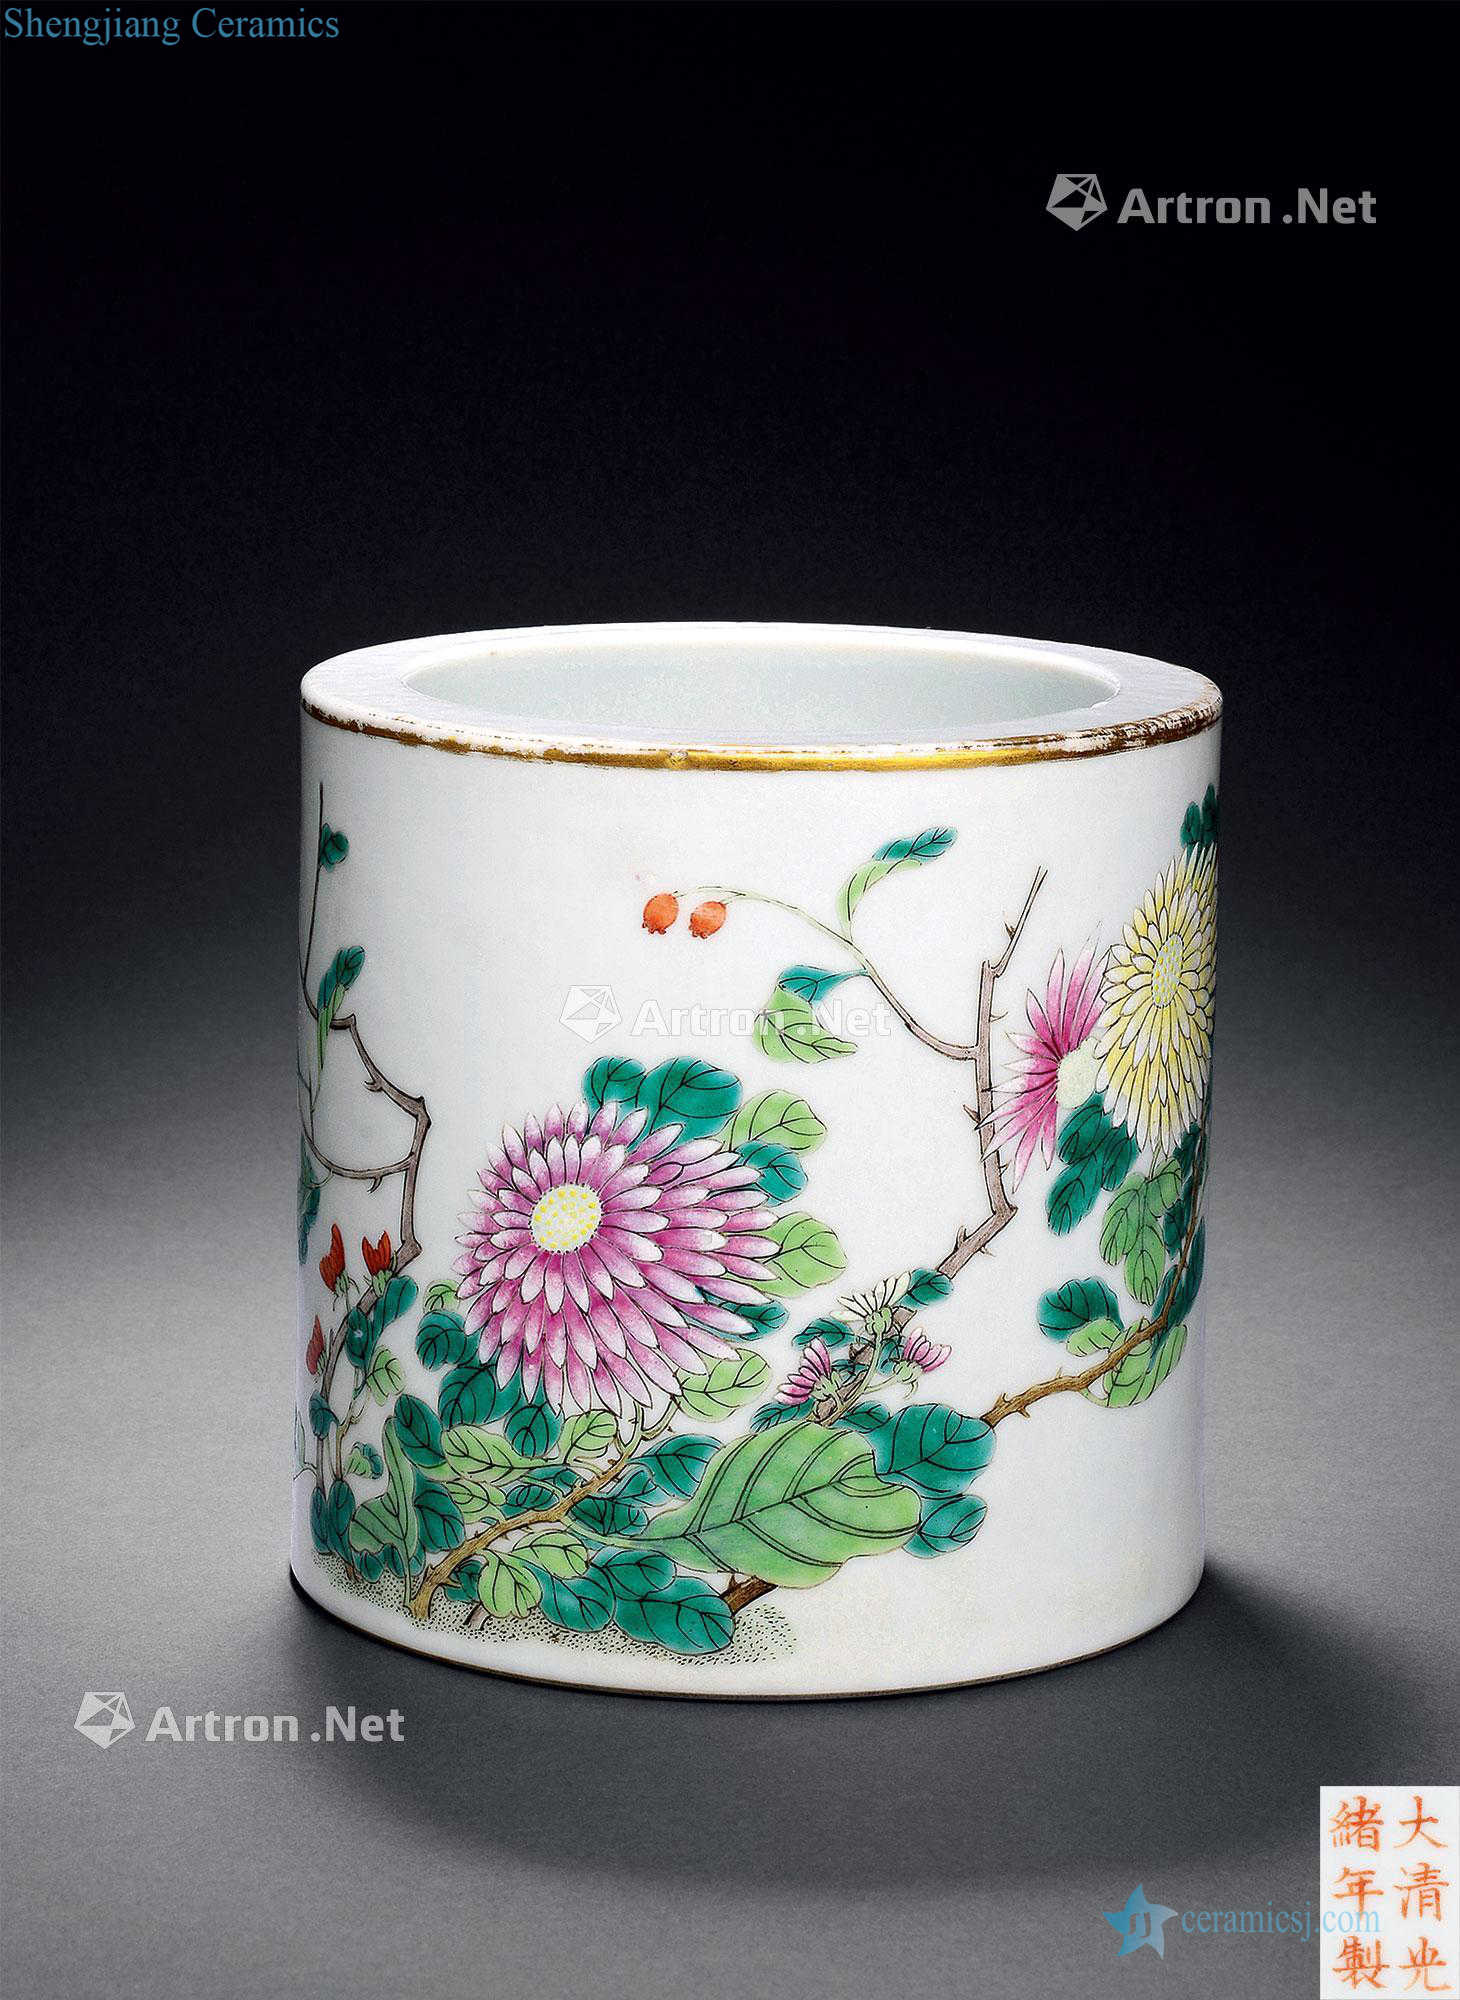 Pastel reign of qing emperor guangxu chrysanthemum pattern brush pot